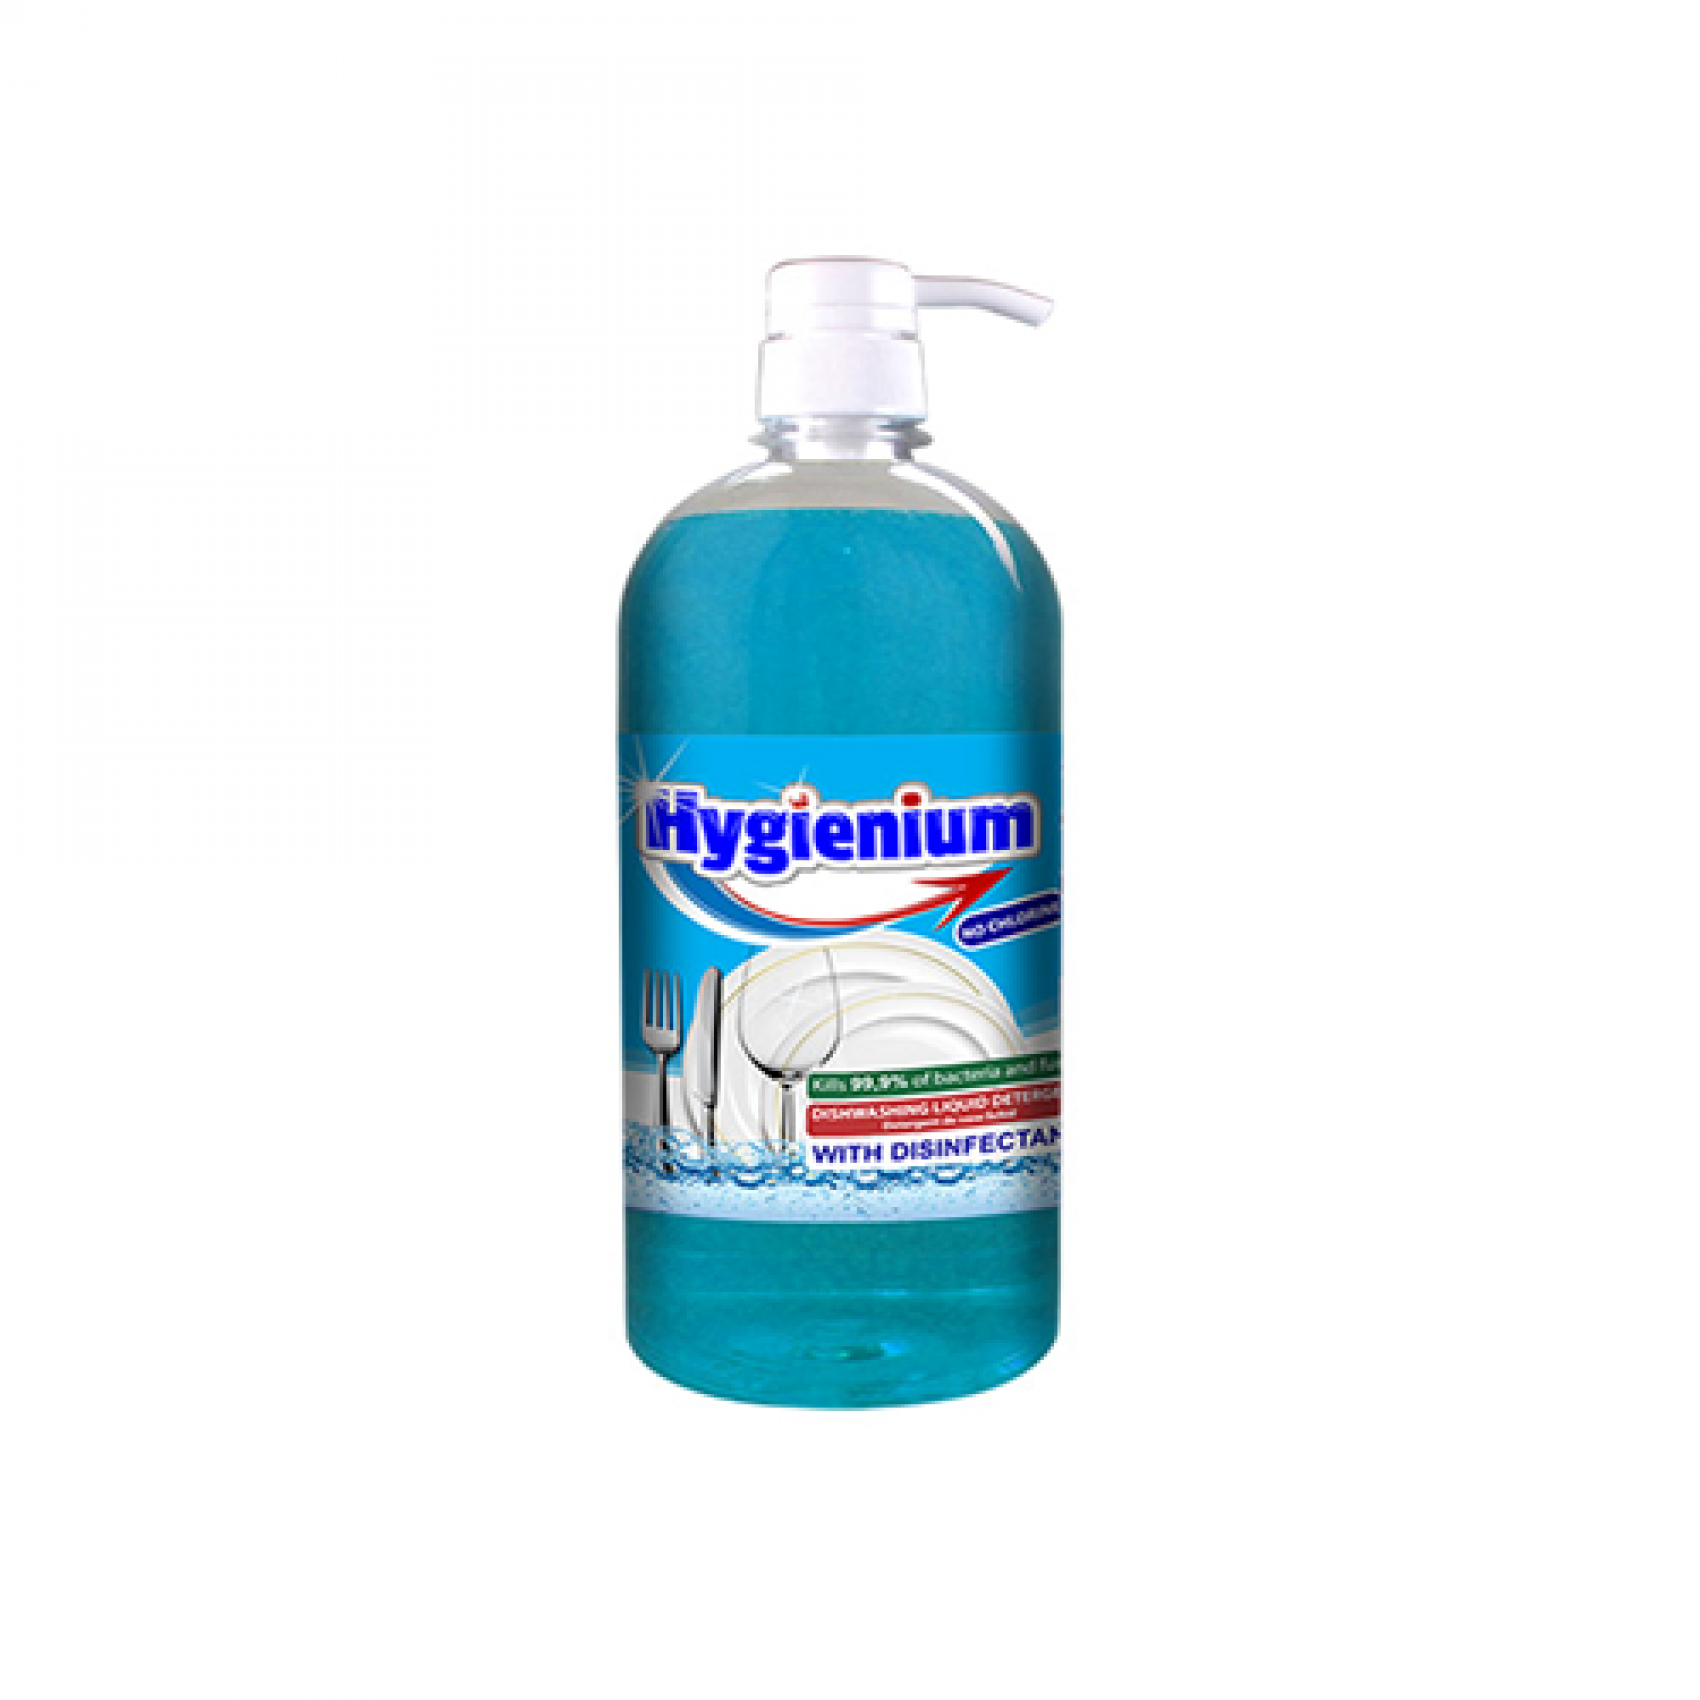 Detergent dezinfectant vase Hygienium - flacon 1 litru